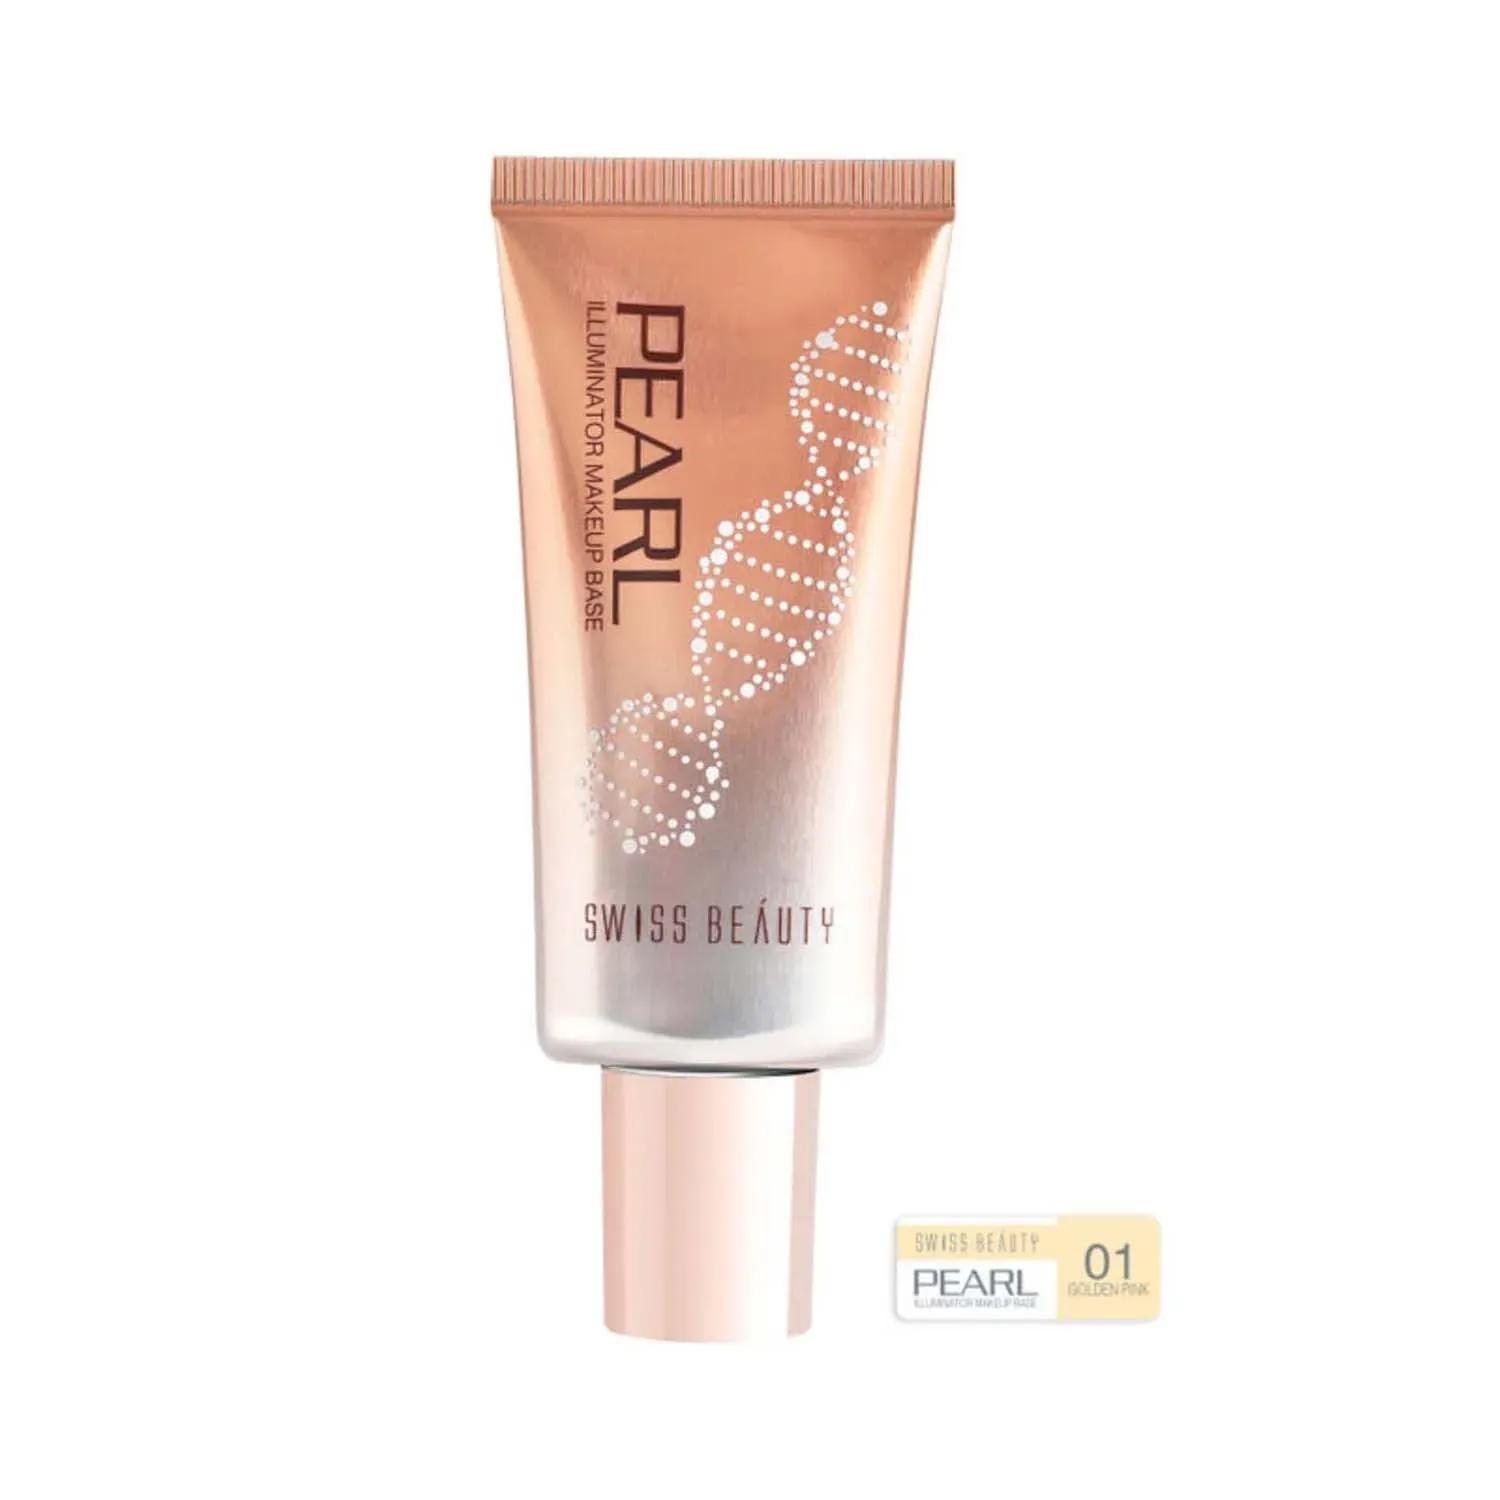 swiss beauty pearl illuminator makeup base - 01 golden pink (35g)